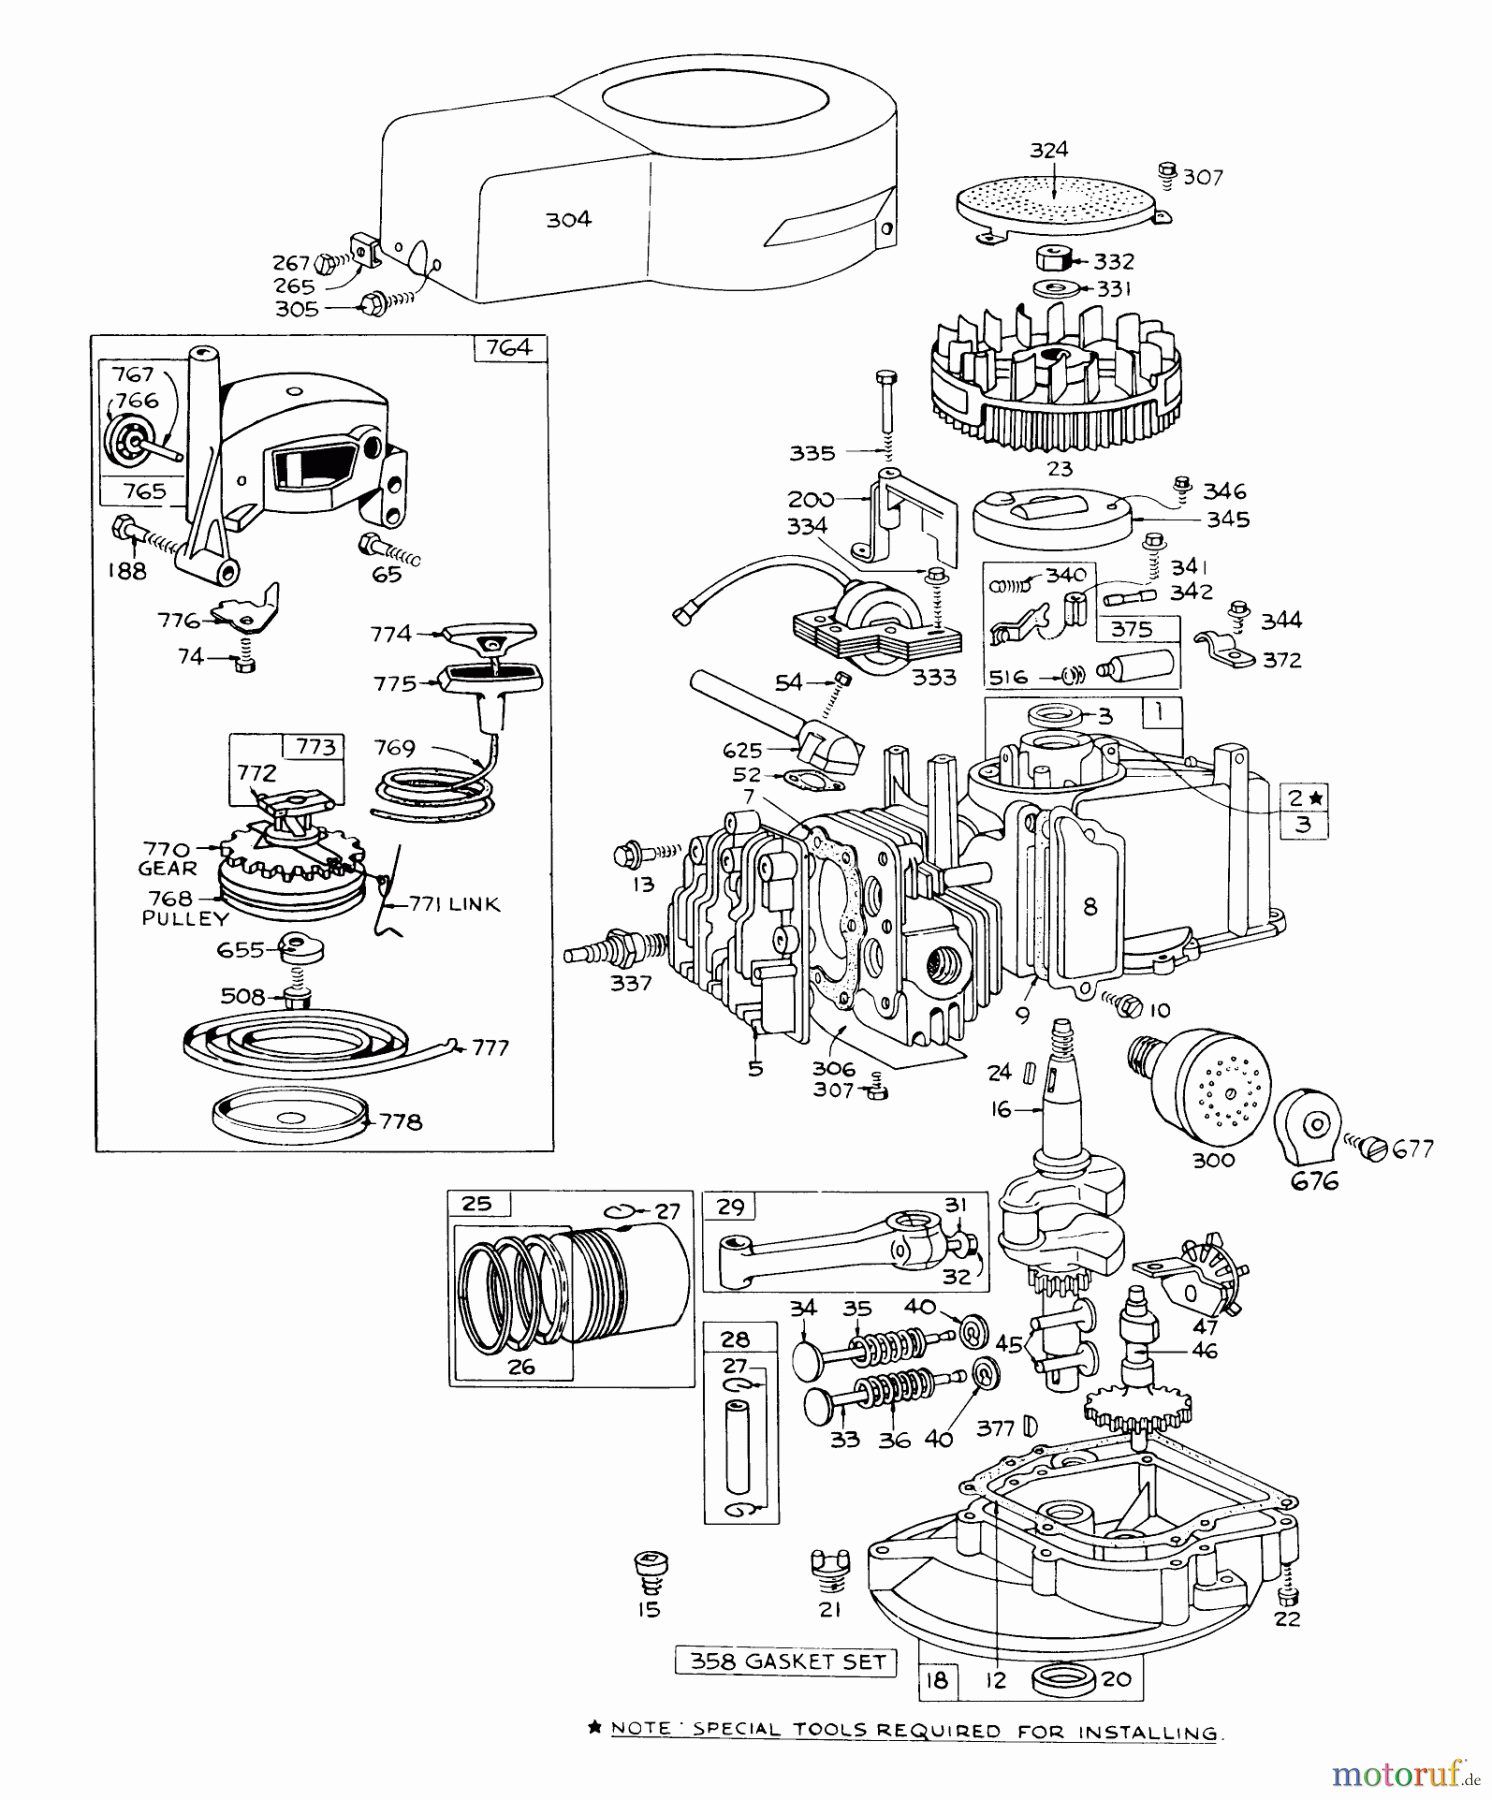  Toro Neu Mowers, Walk-Behind Seite 1 16173 - Toro Whirlwind Lawnmower, 1973 (3000001-3999999) ENGINE BRIGGS & STRATTON - MODEL 92508-0844-01 FOR 19